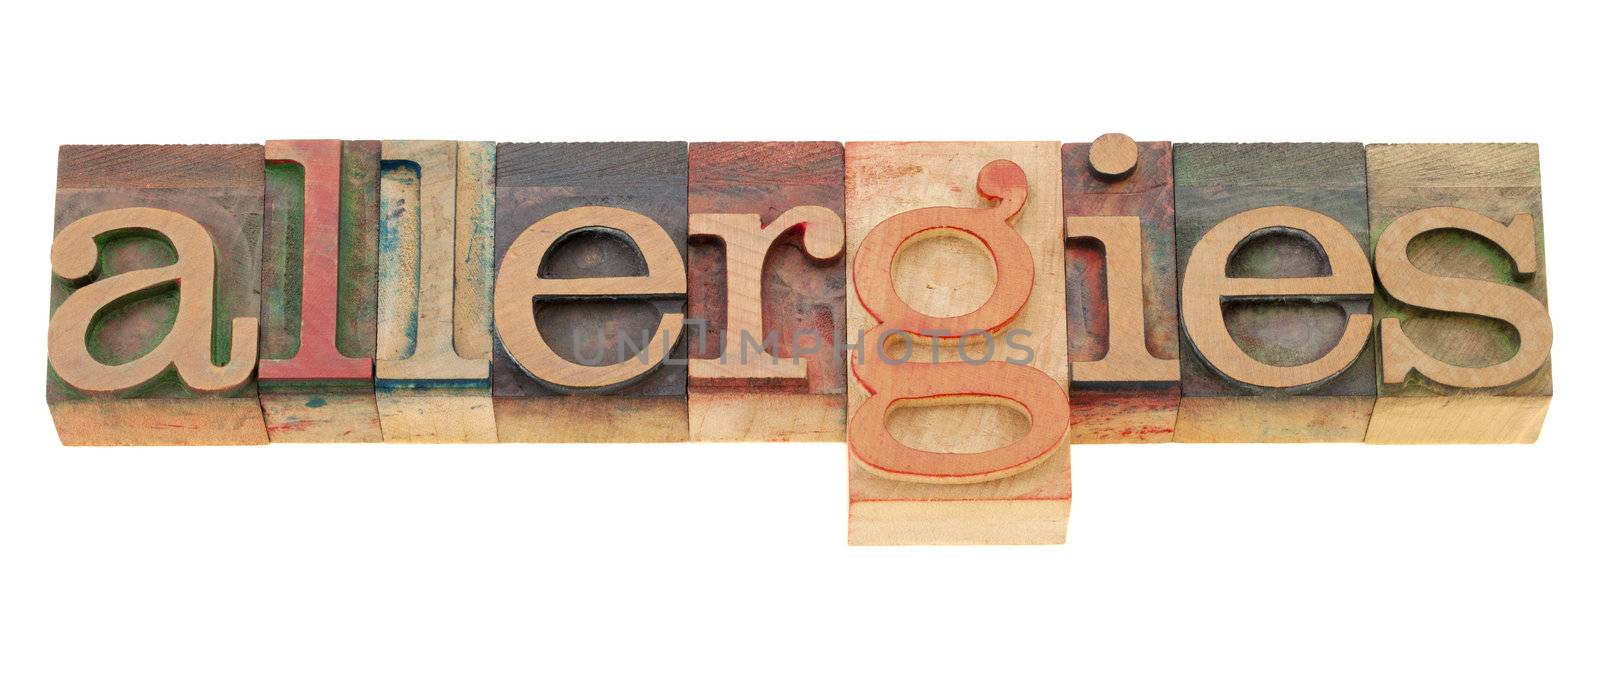 allergies  - isolated word in vintage wood letterpress printing blocks